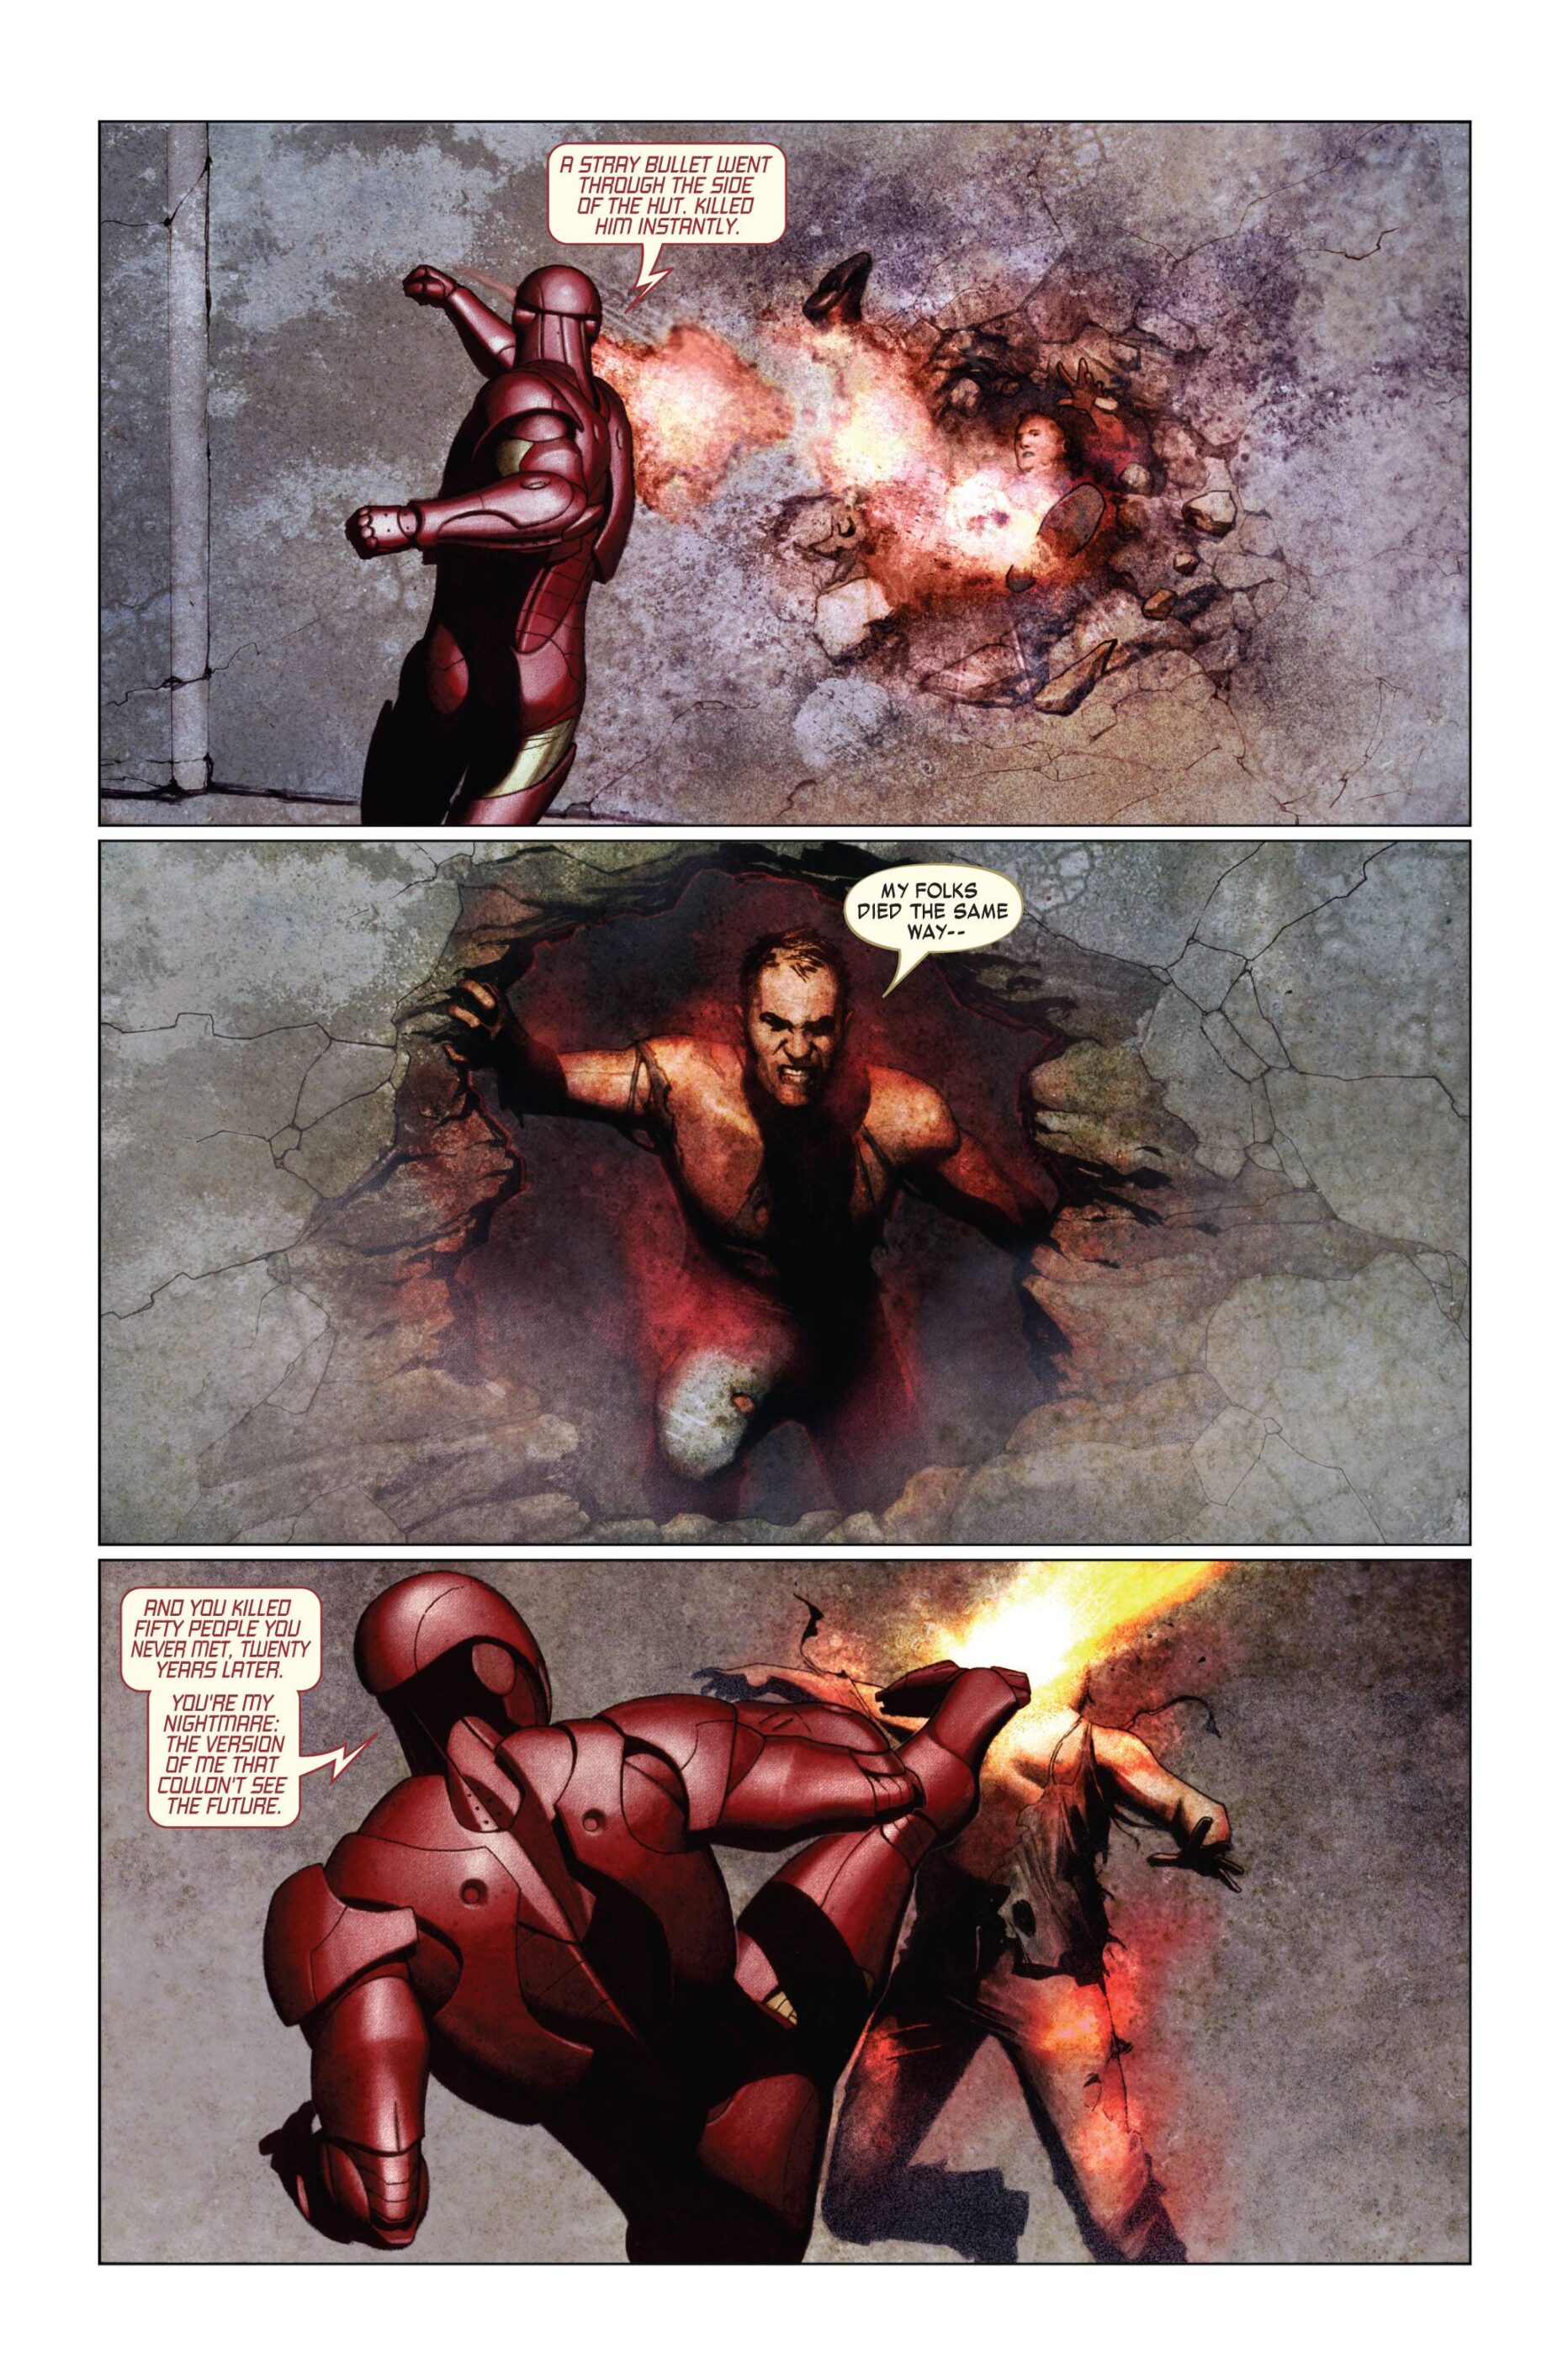 Storie a fumetti che dovreste proprio recuperare #02: Iron Man: Extremis